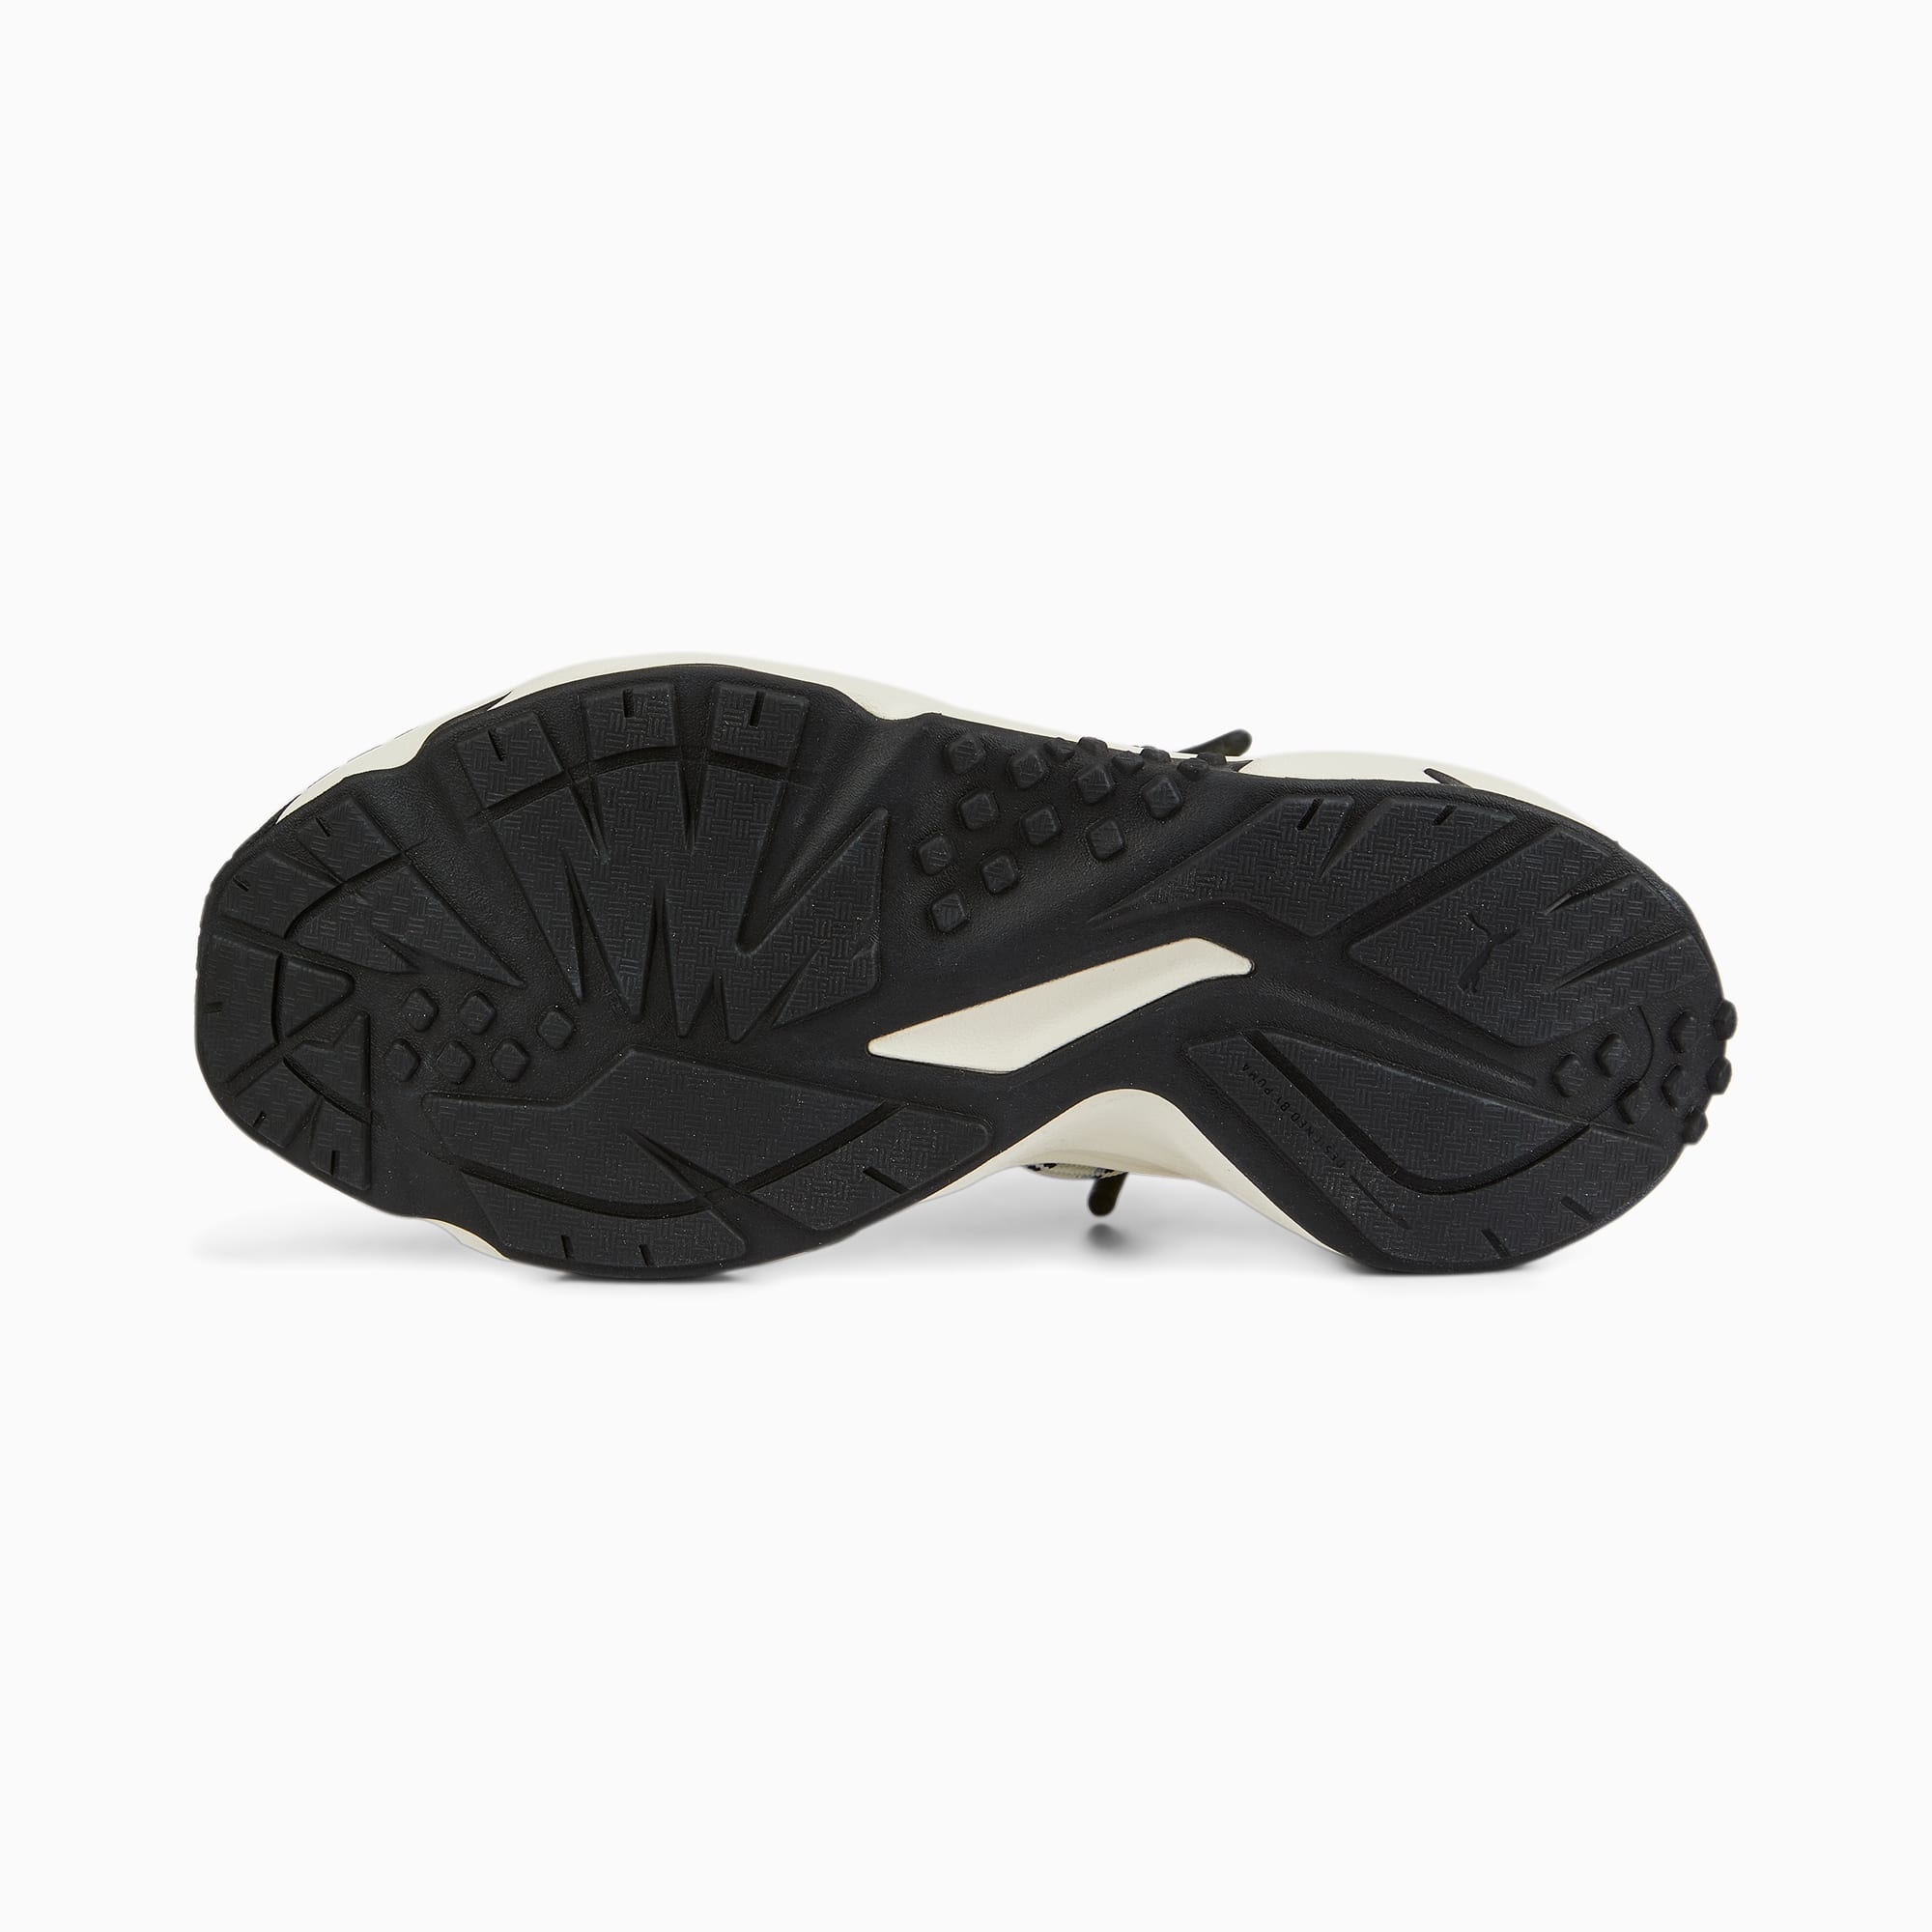 PUMA Chaussure Baskets Plexus Retro Pour Homme, Noir